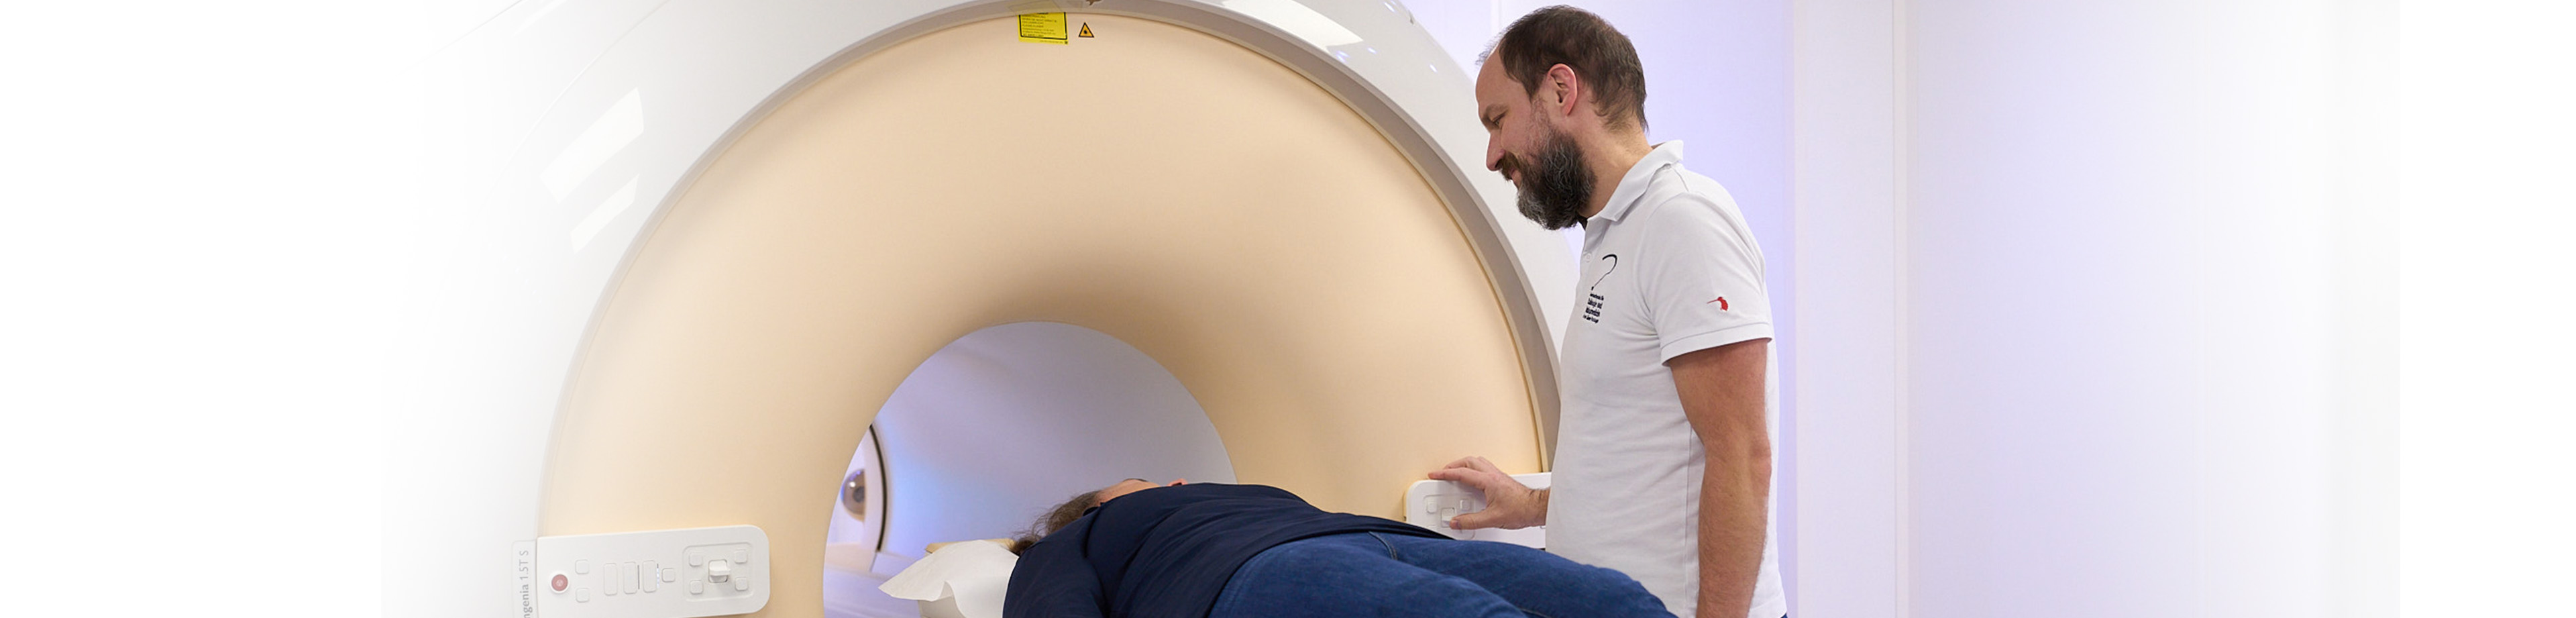 Strahlentherapie, Ultraschalluntersuchungen | Radiologischer Befundbericht | Praxis für Radiologie & Nuklearmedizin